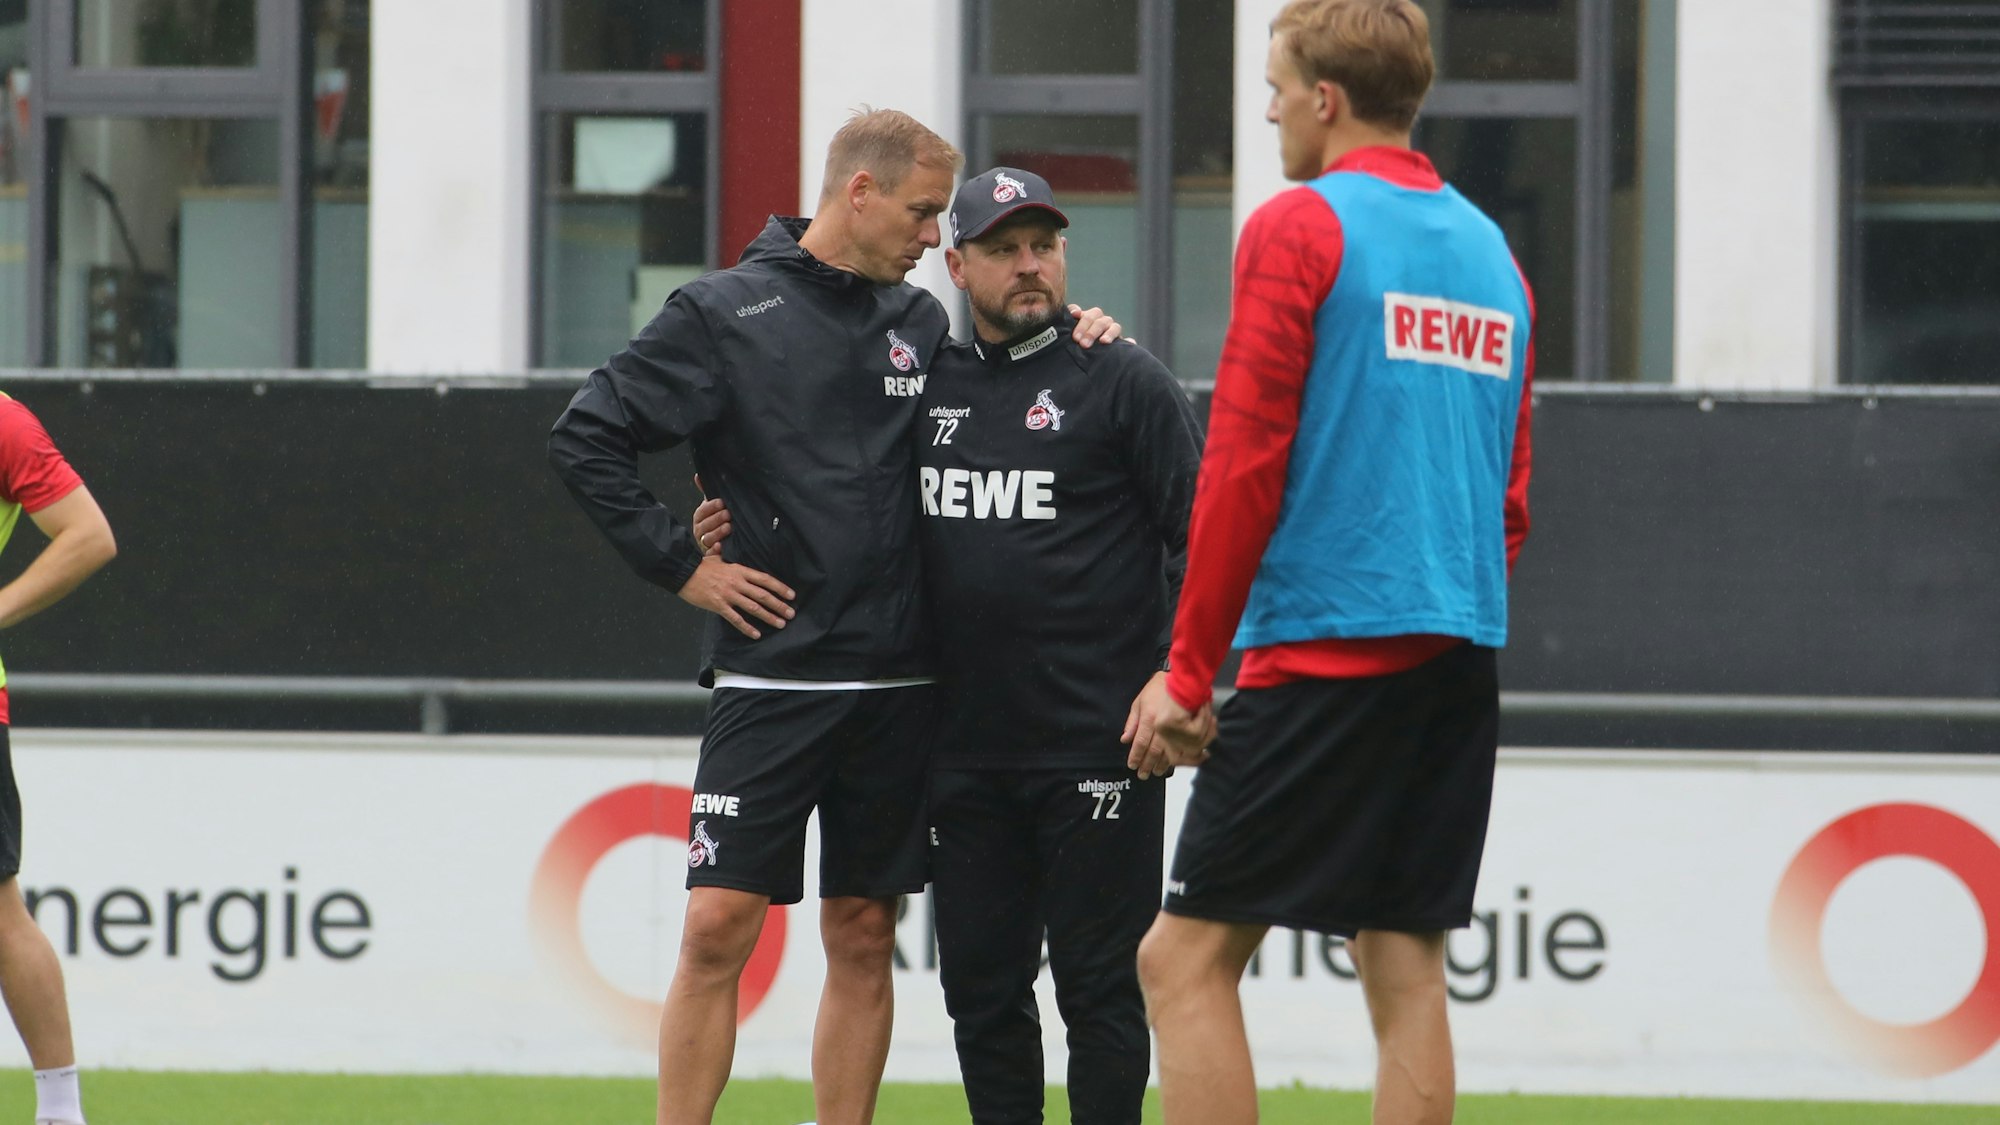 Das neue Kölner Trainer-Duo Kevin McKenna mit Steffen Baumgart steht auf dem Platz.